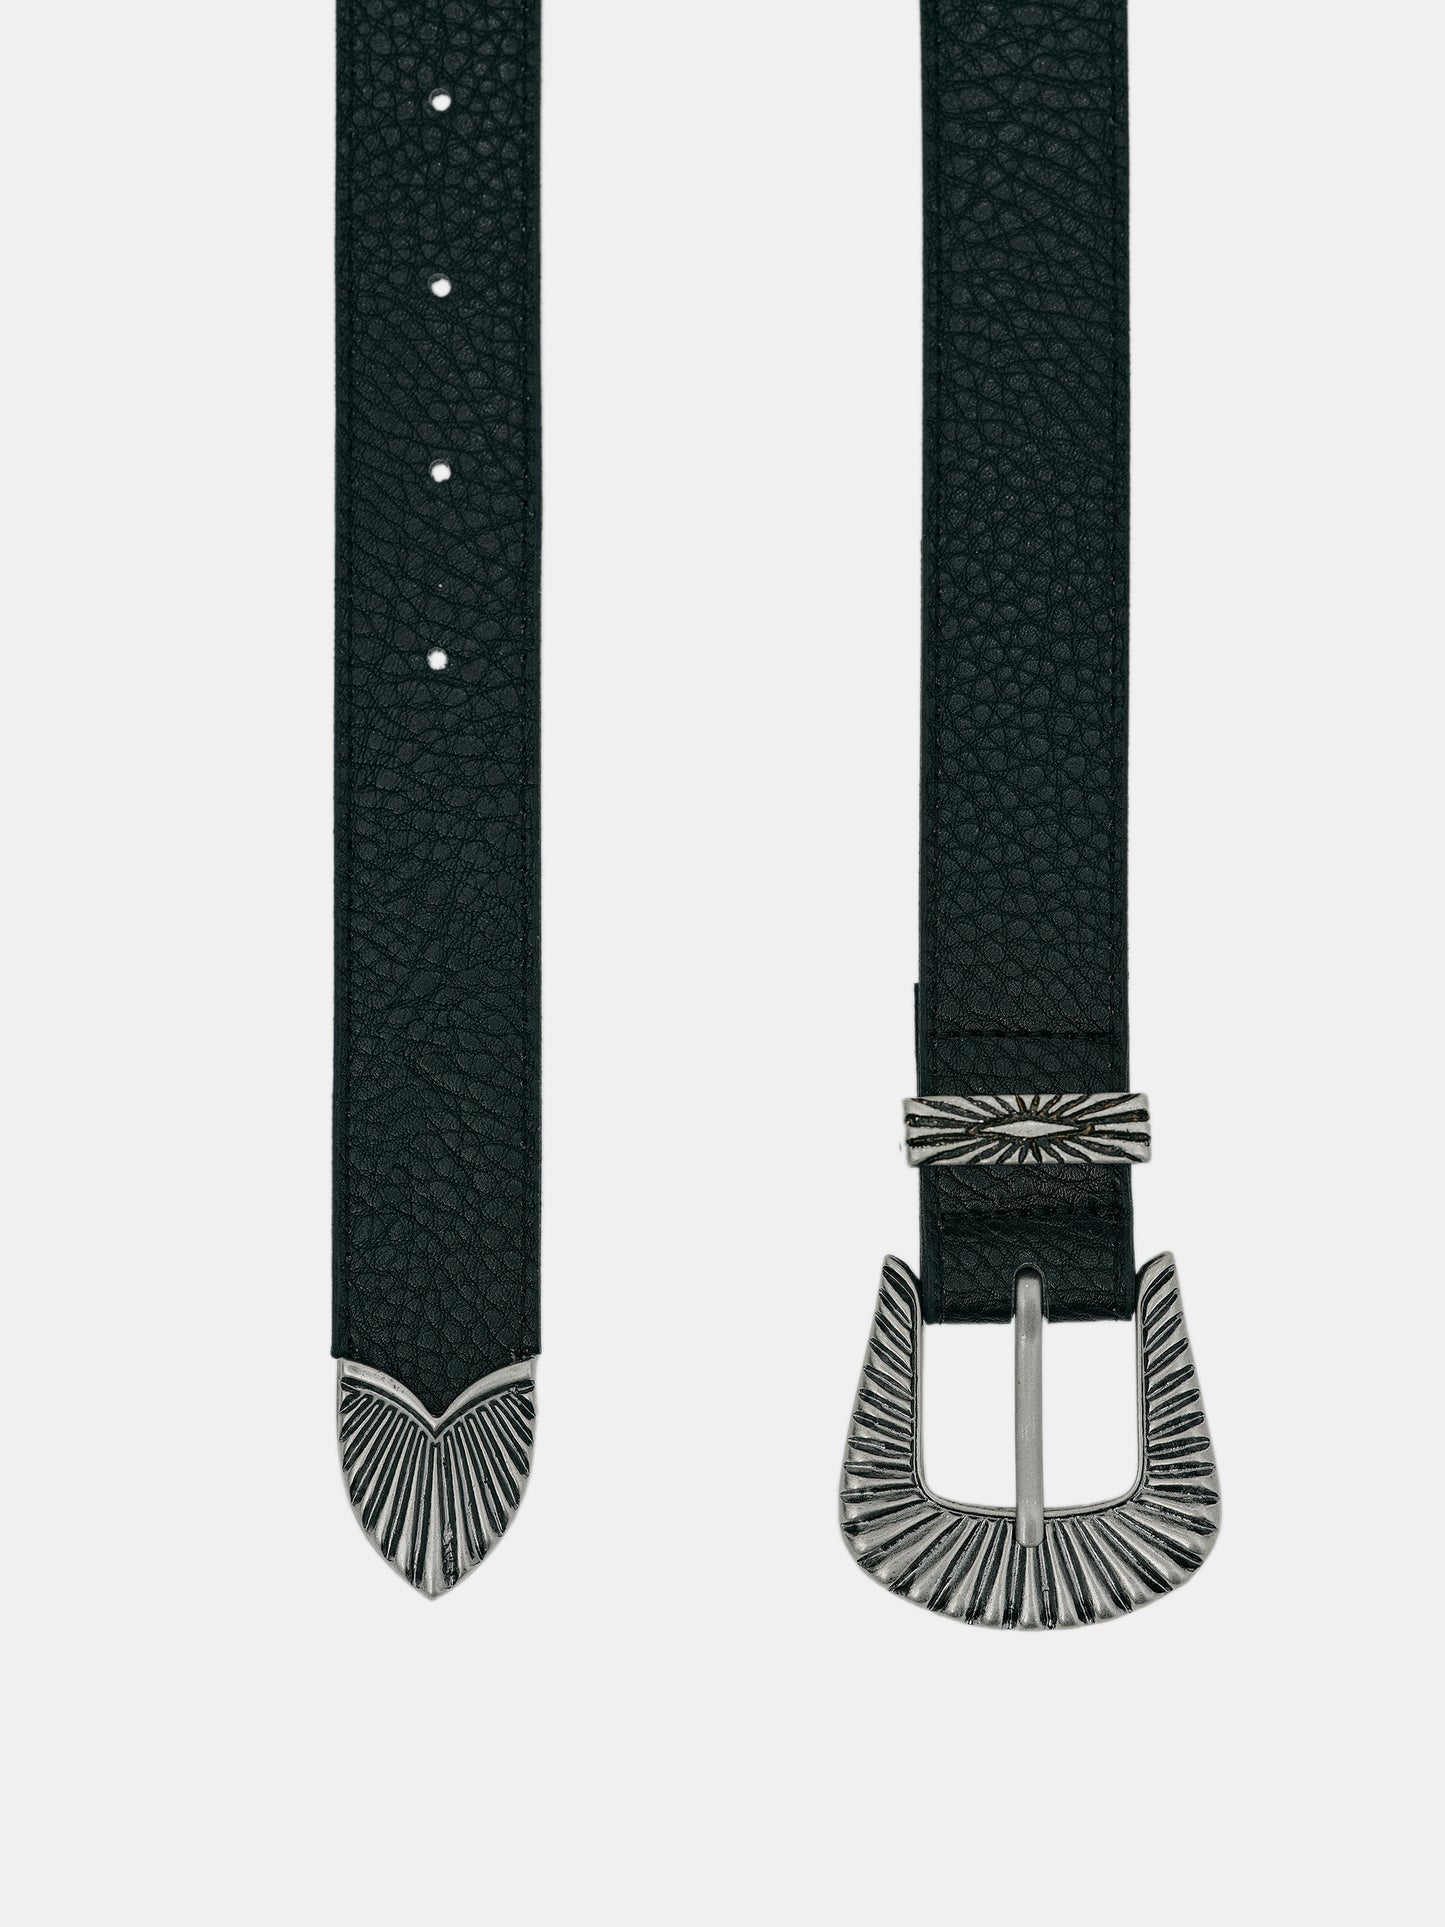 Vegan Leather Antiqued Belt, Black